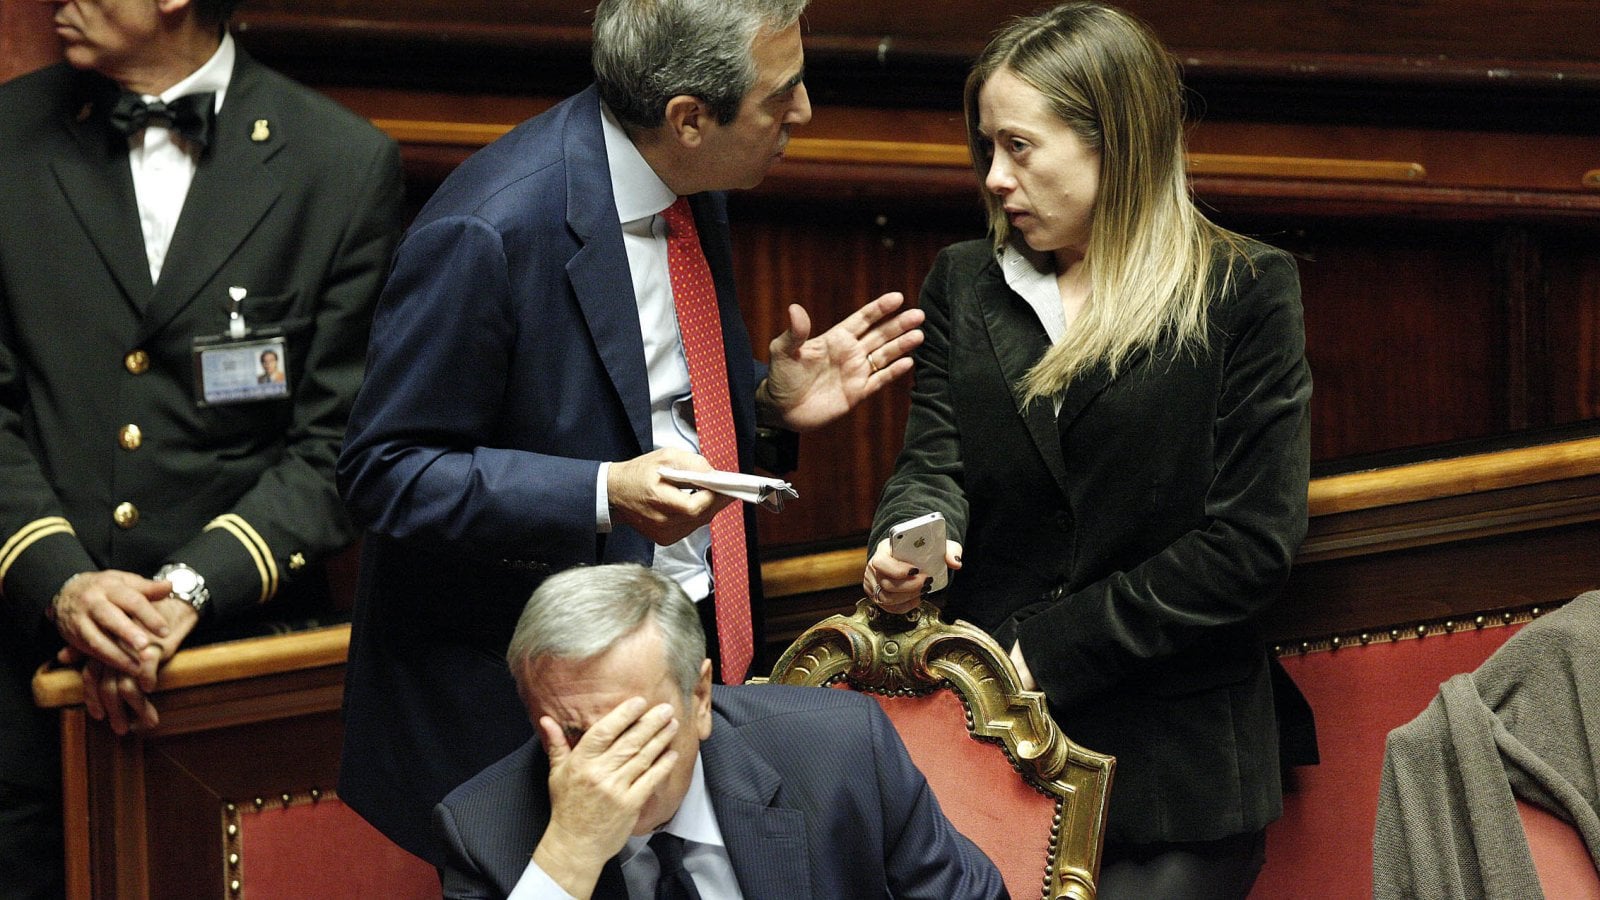 Sardegna, Gasparri commenta la (prossima) sconfitta: "Situazione non positiva, bisognerà riflettere"